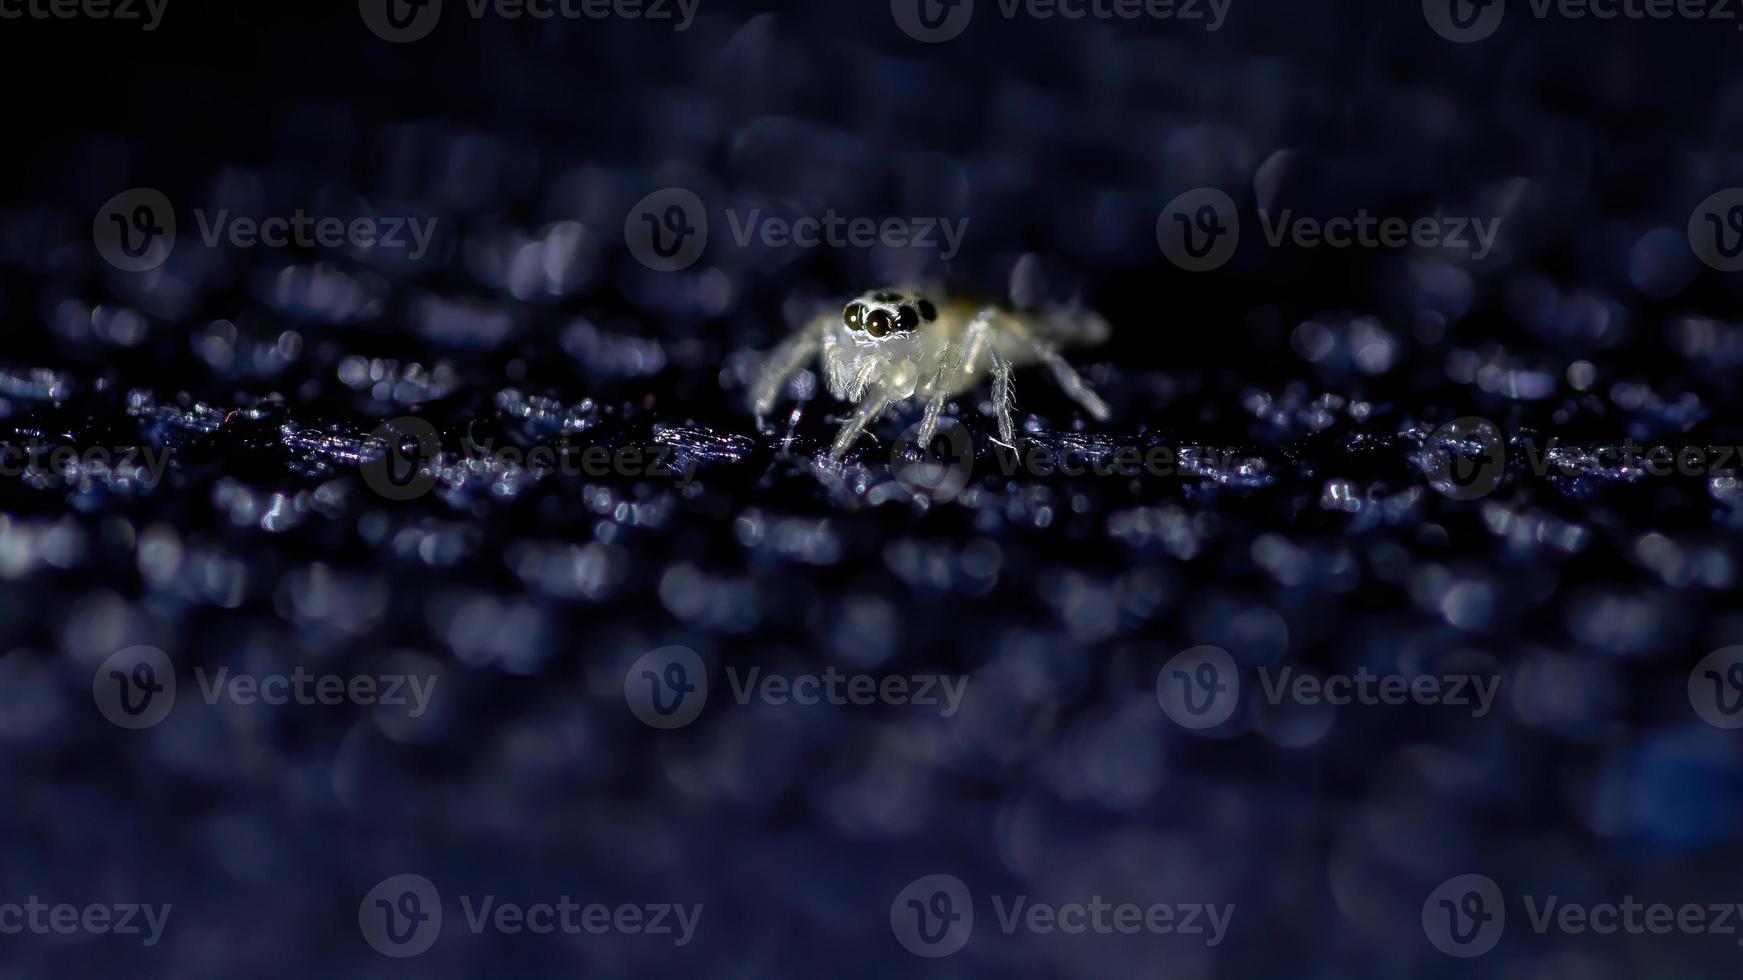 piccolo ragno saltatore foto